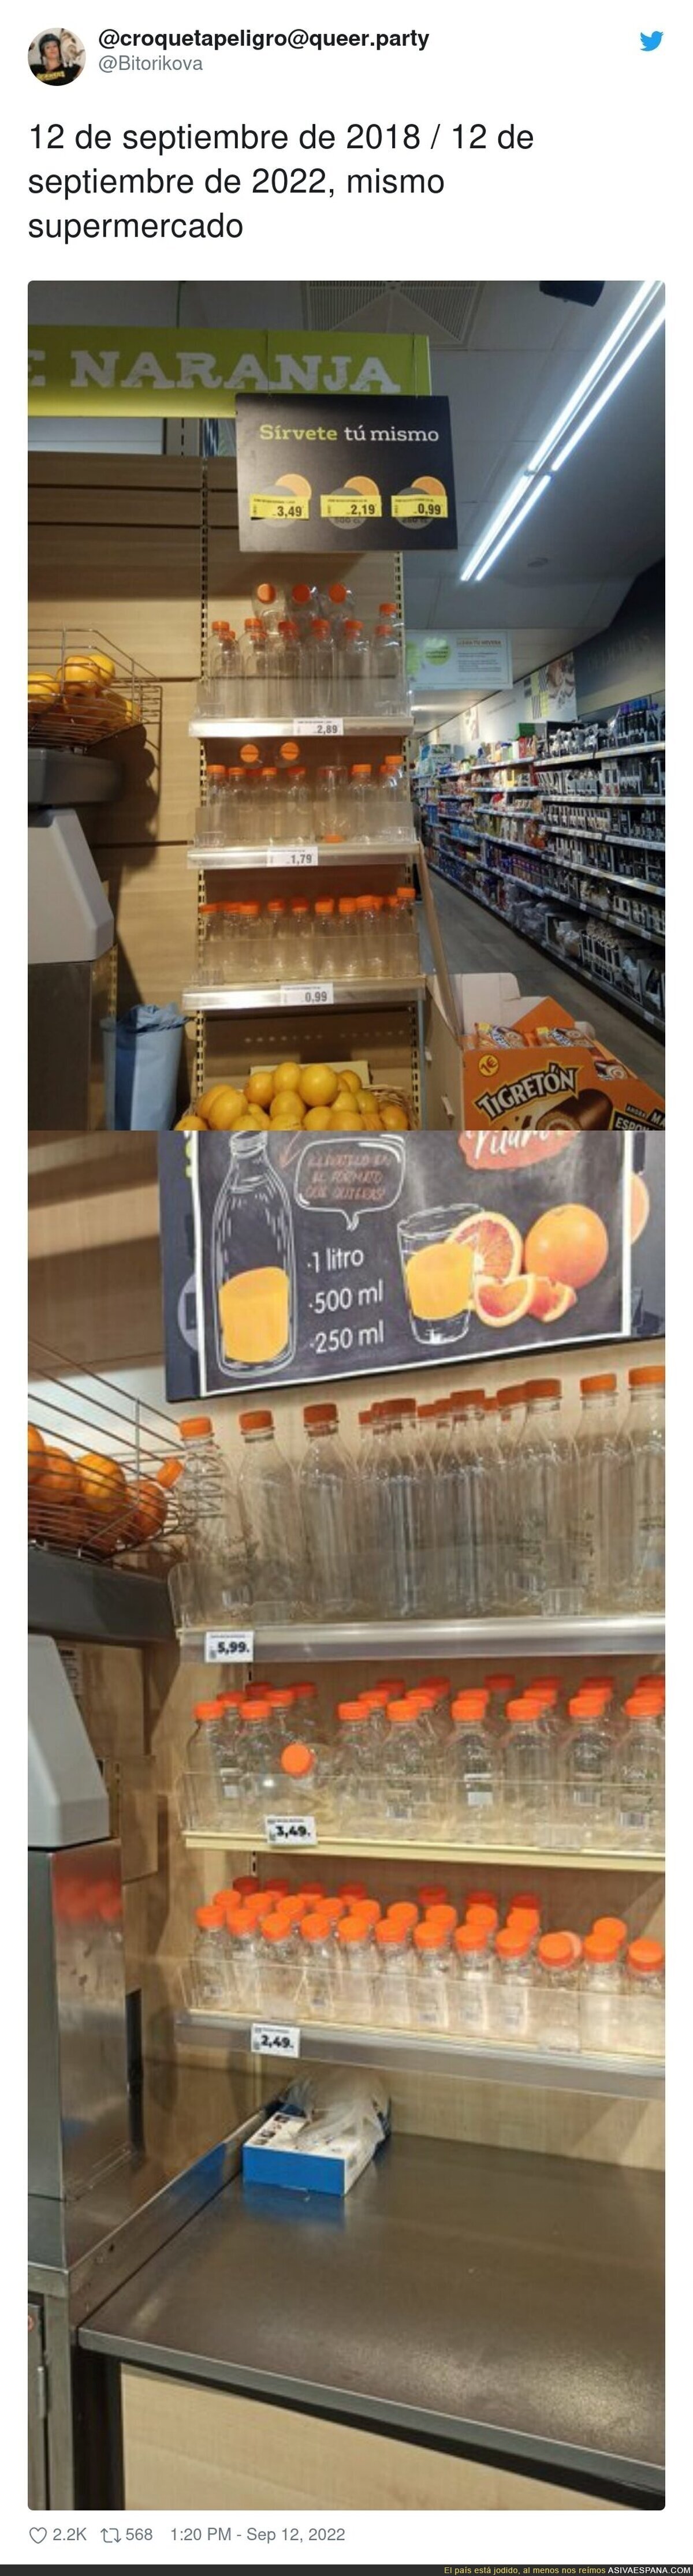 Y siguen pagando casi lo mismo o menos a los productores por el kg de naranja, por @Bitorikova